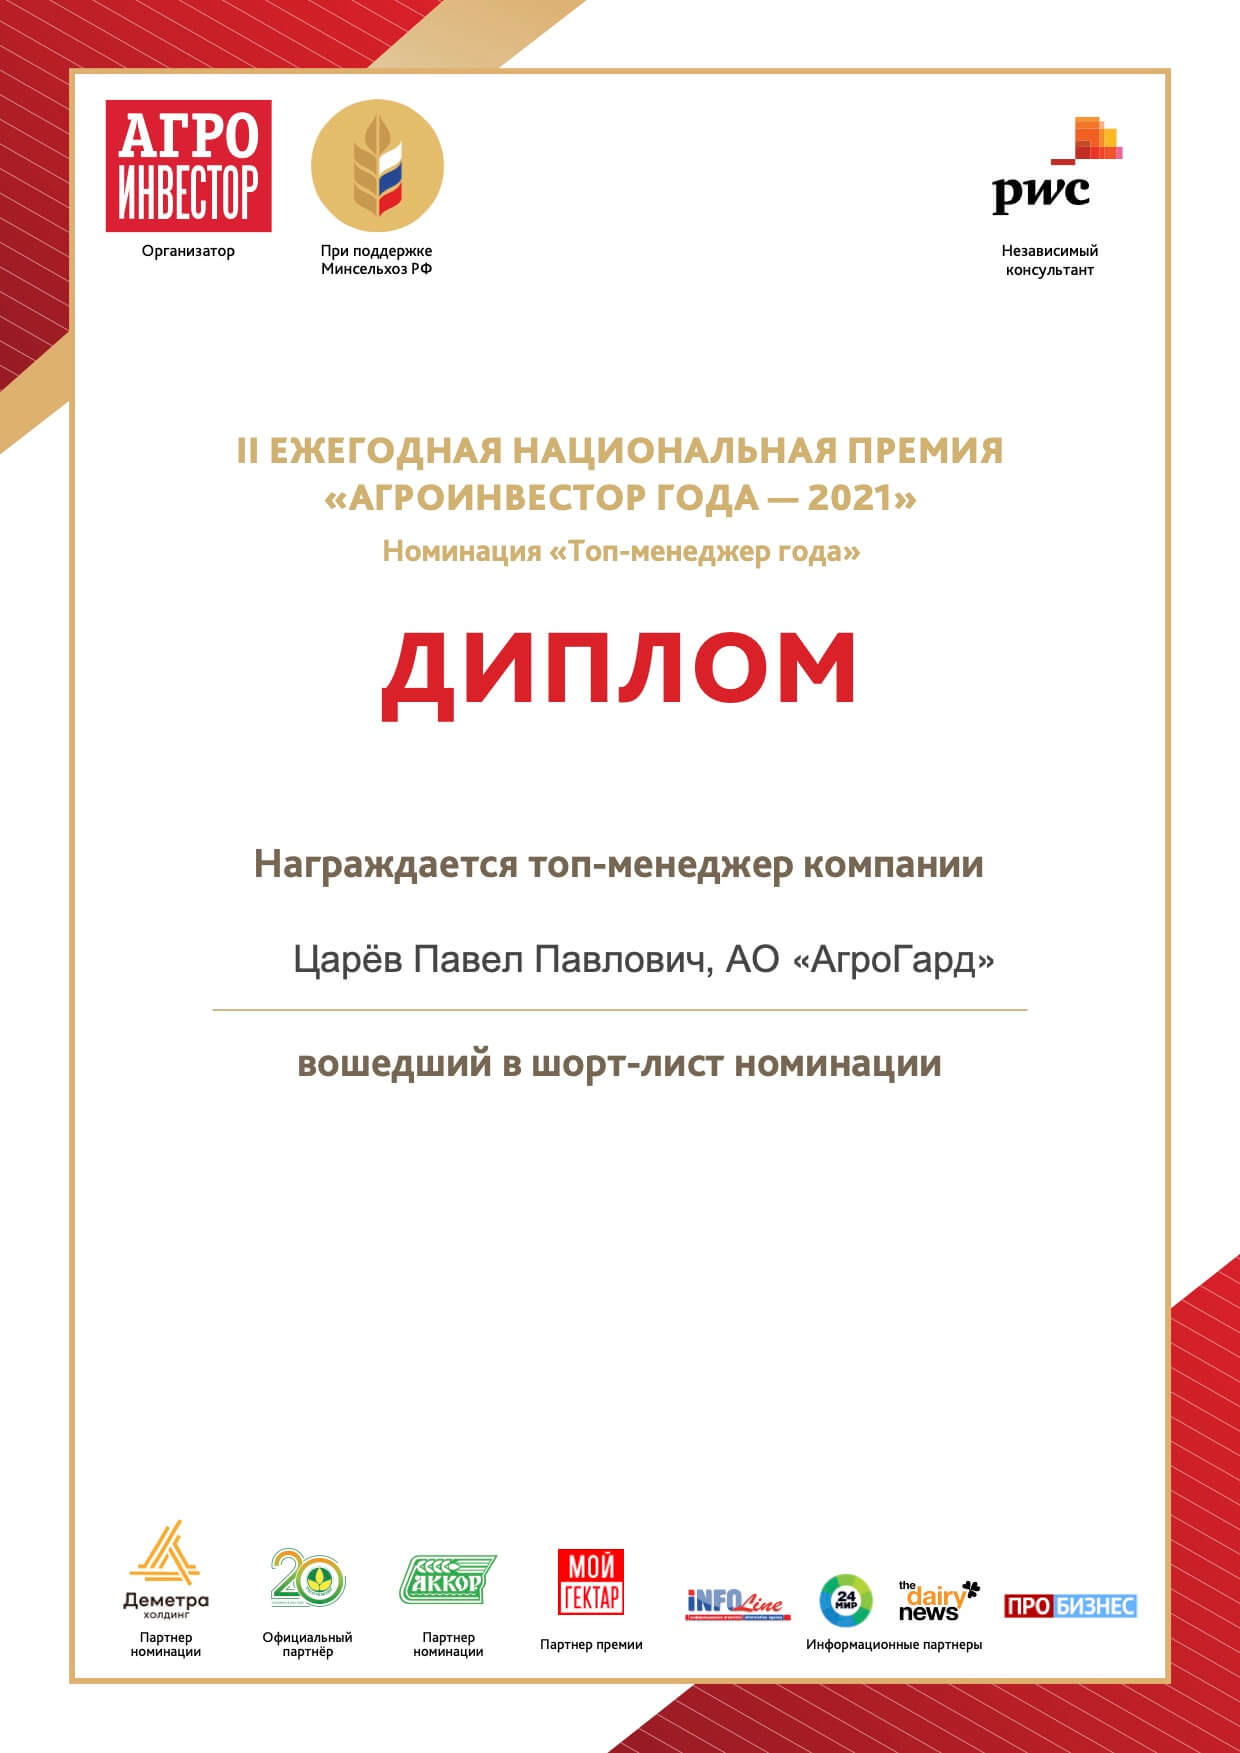 Генеральный директор АО АгроГард П.П. Царев вошел в шорт-лист премии Агроинвестор года – 2021 в номинации «Топ-менеджер года